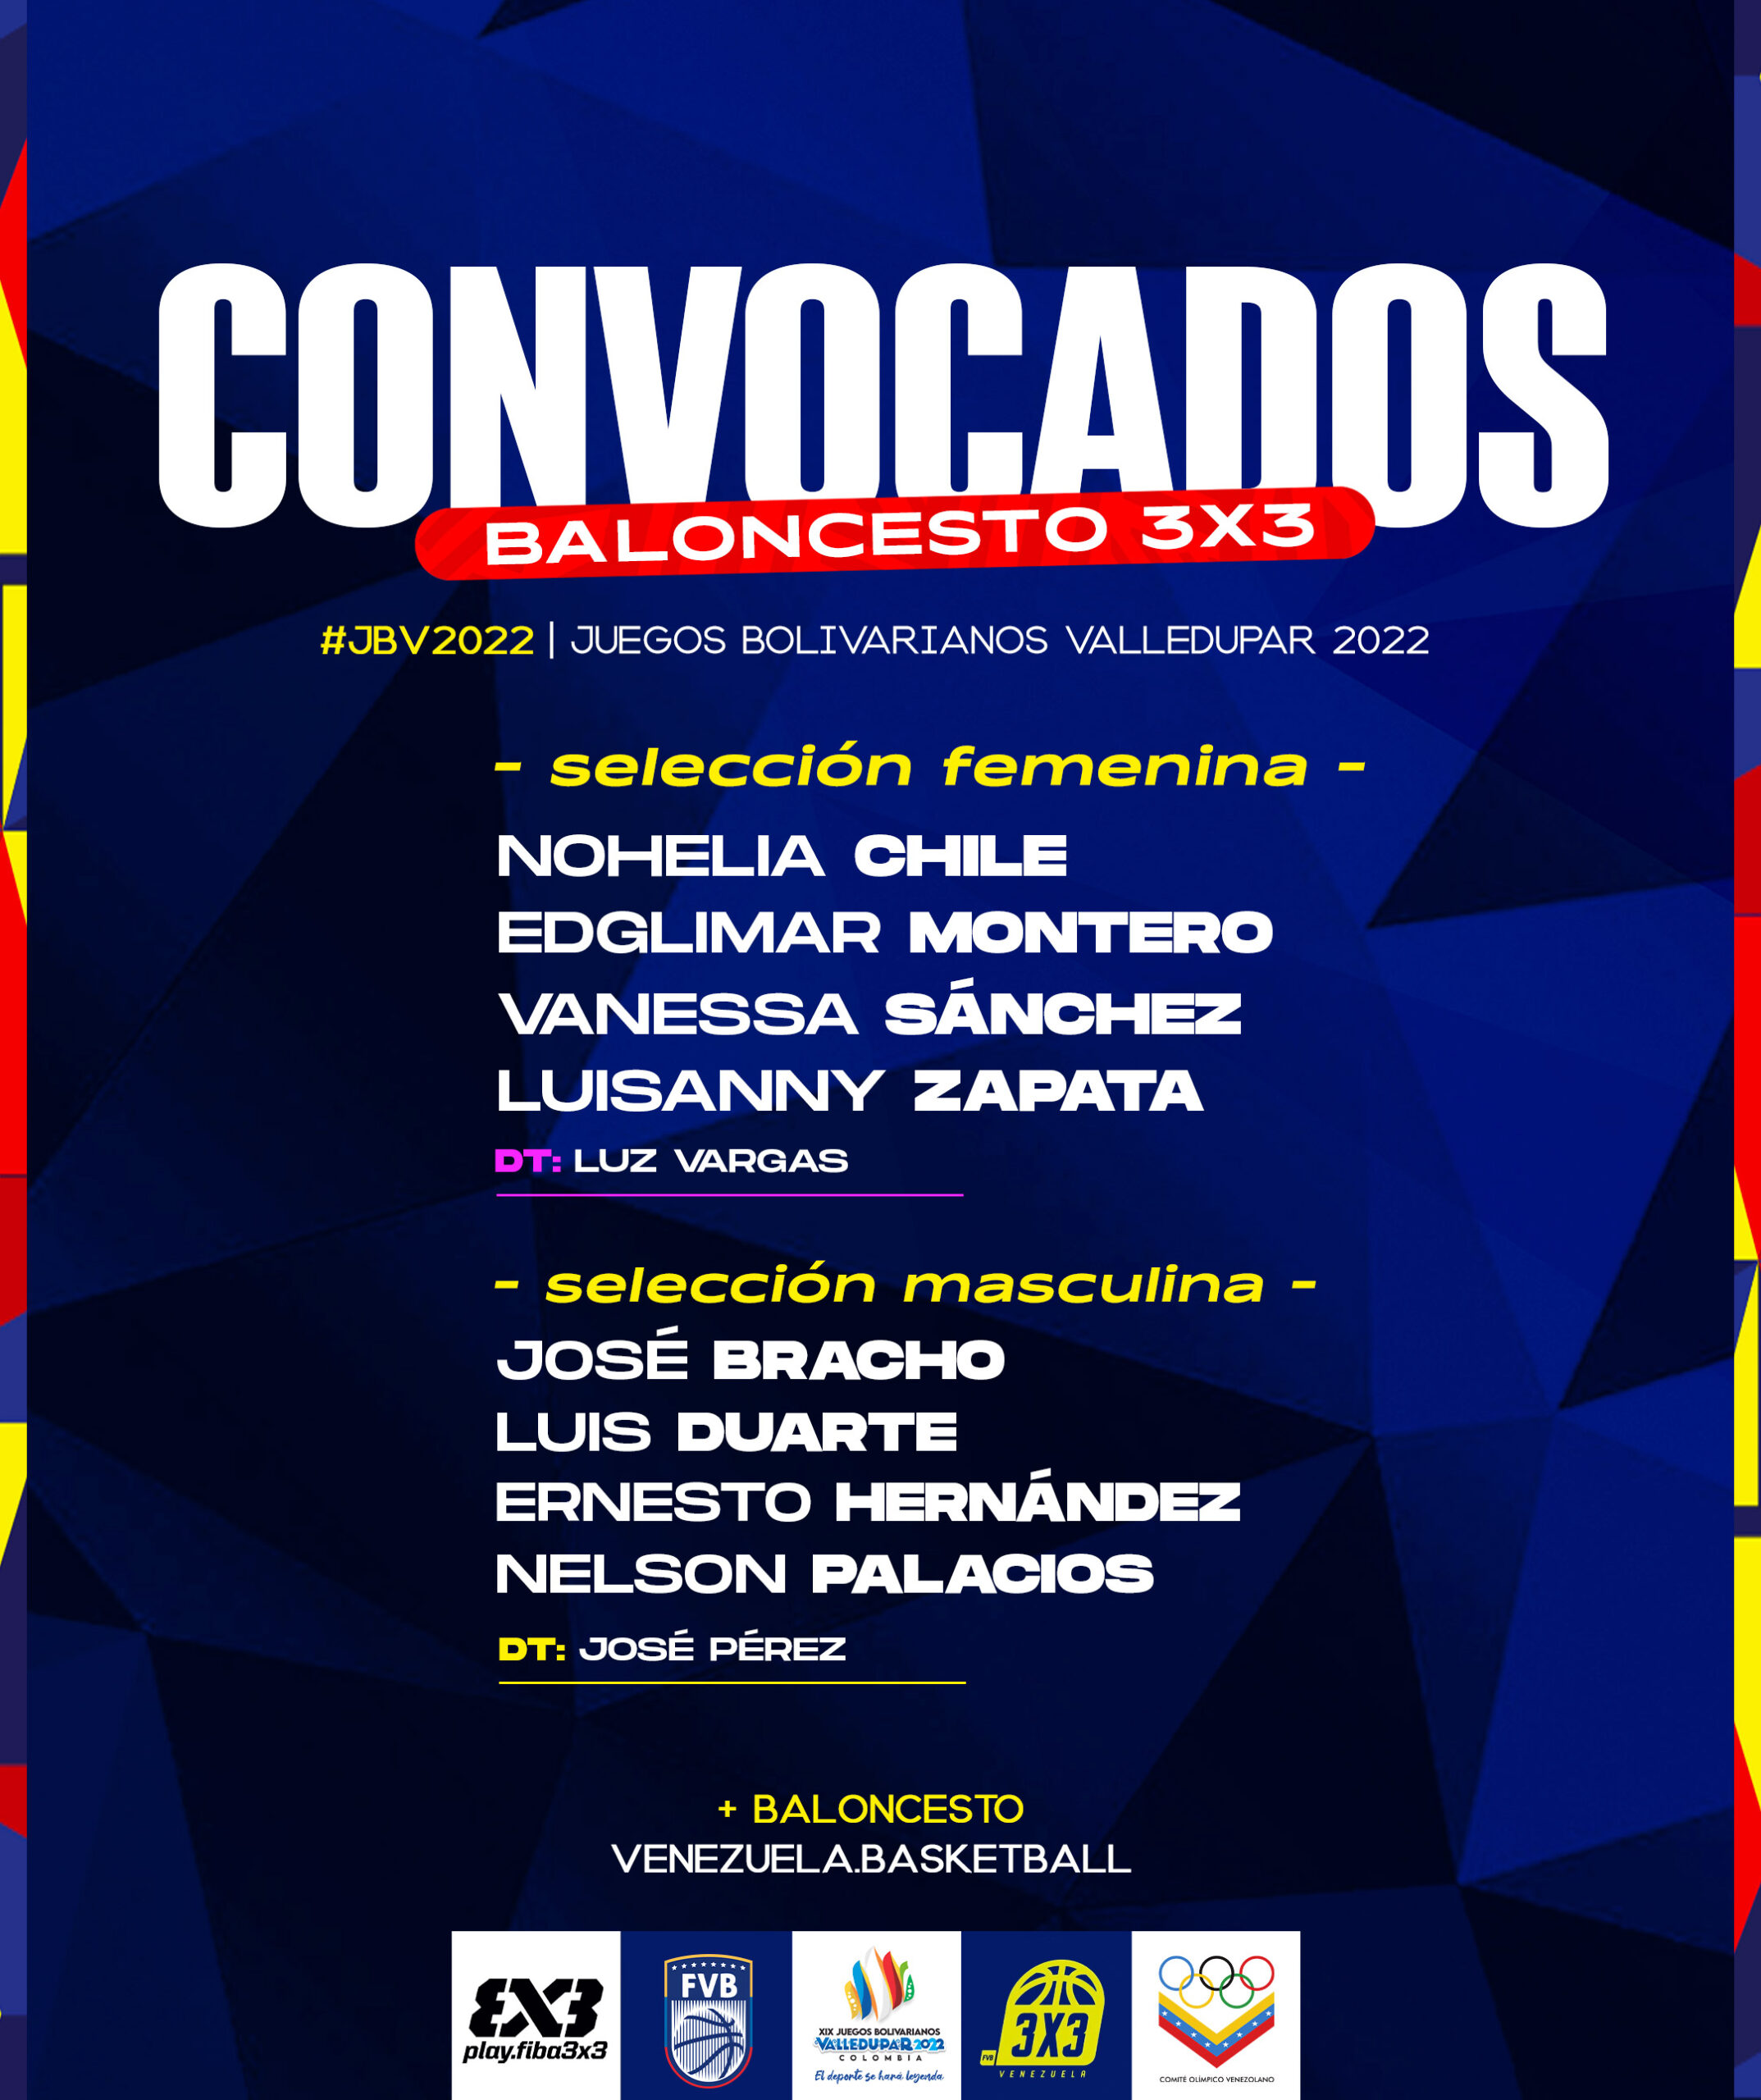 Convocados - Baloncesto 3x3 - Juegos Bolivarianos Valledupar 2022